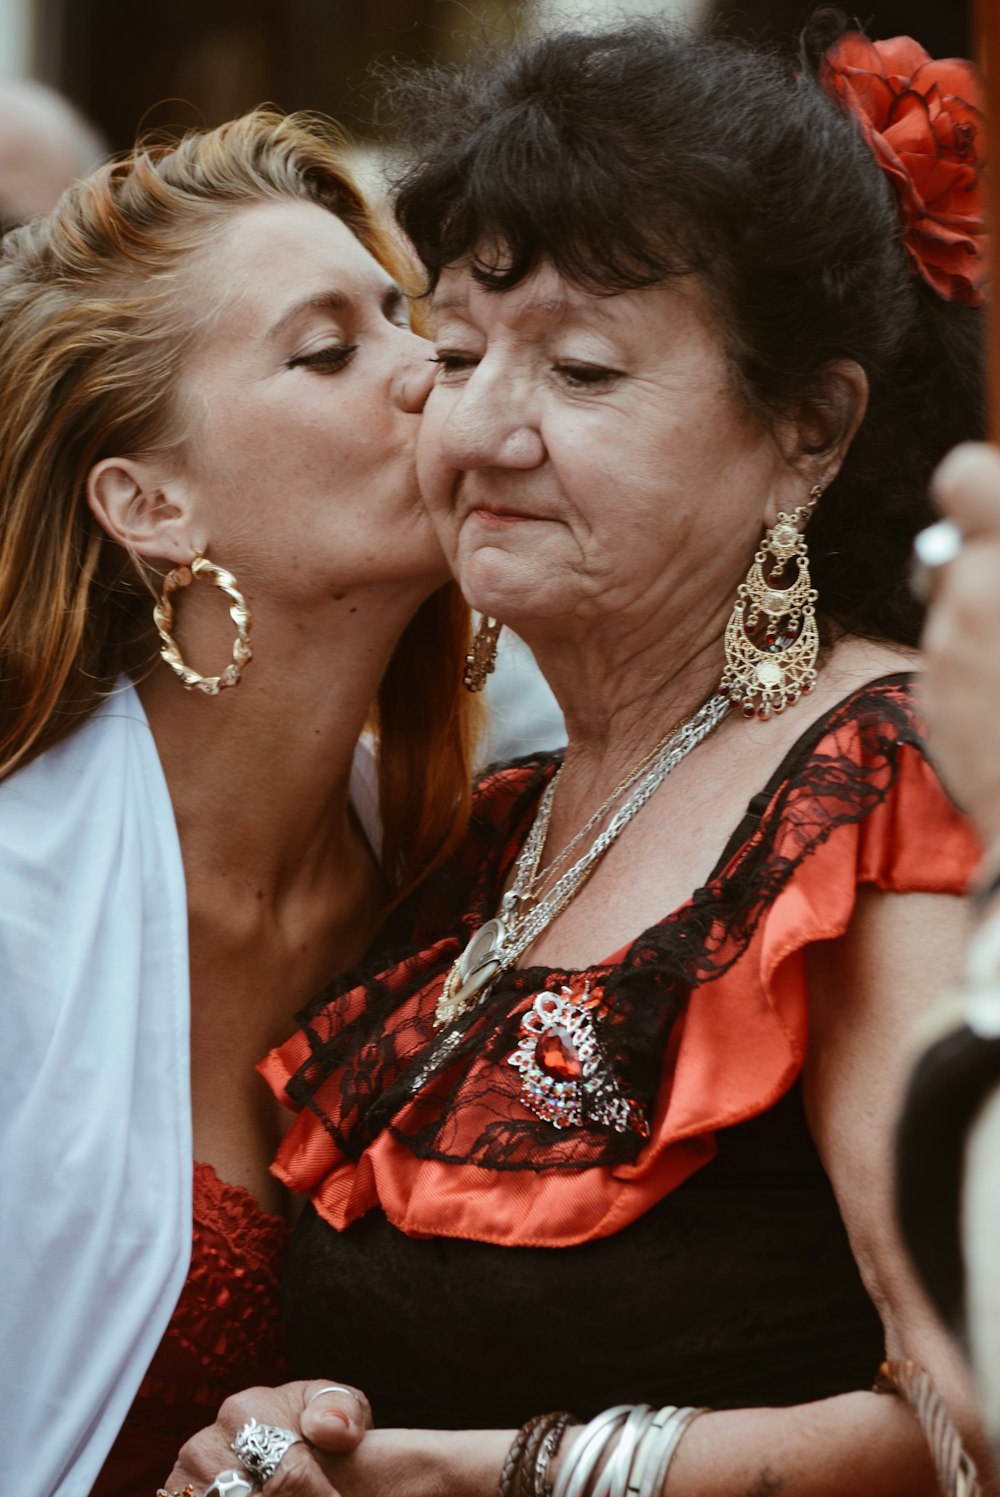 Mujer en vestido floral rojo y negro besando a la mujer en vestido blanco